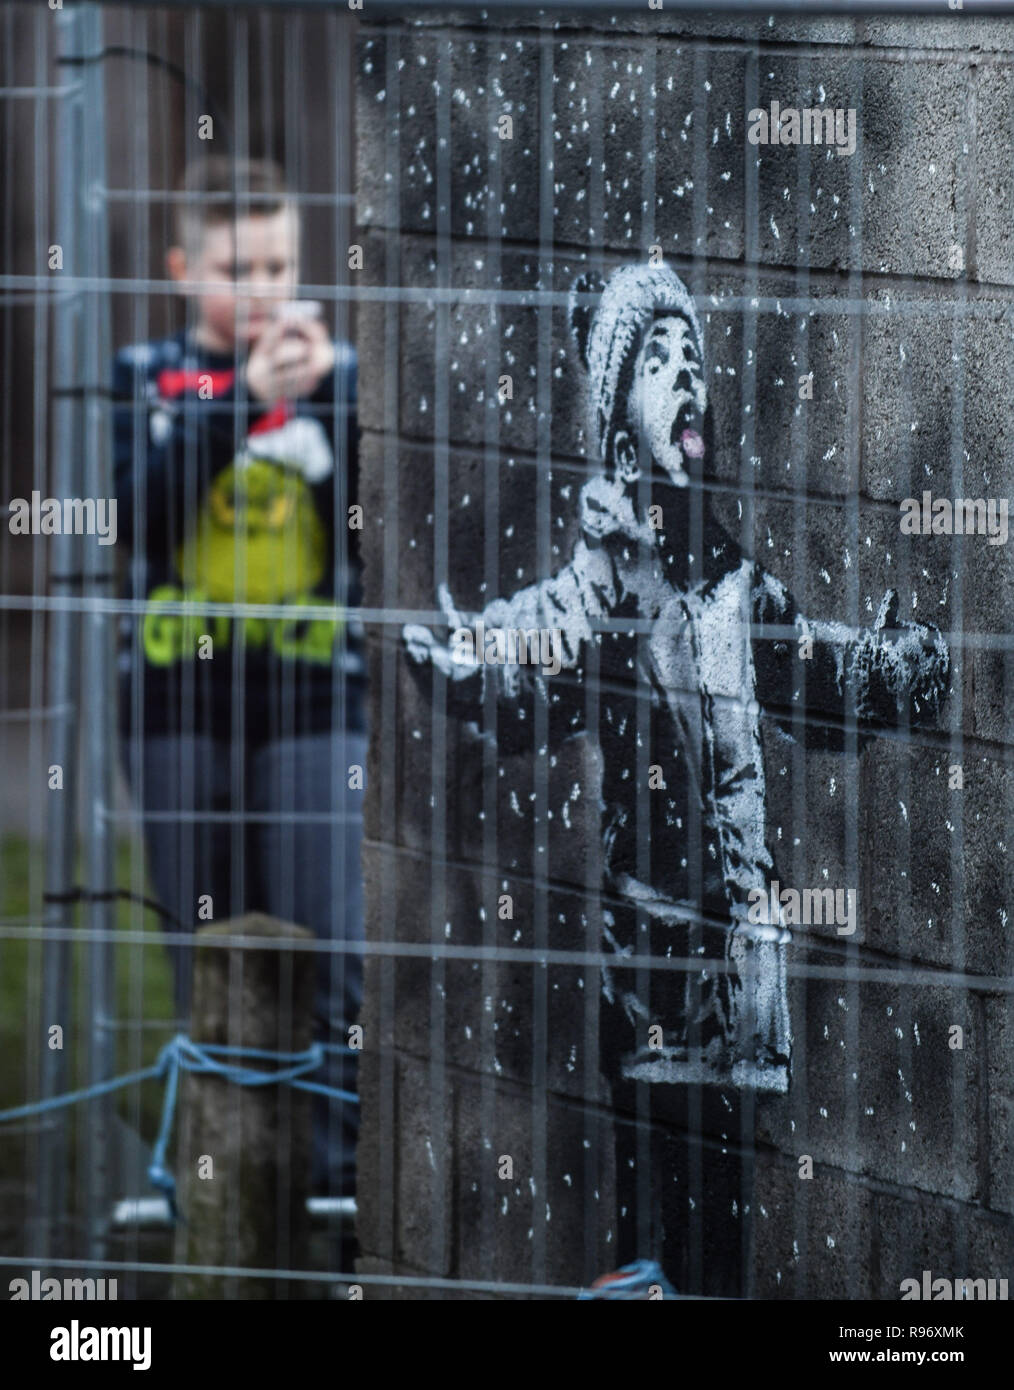 Port Talbot, Wales, UK. Dezember 2018 20. Menschen strömen in eine Garage in der Stahl Stadt Port Talbot in South Wales, Großbritannien, nachdem es wurde bestätigt, dass eine Arbeit von Graffiti auf Es erscheint, von dem Künstler Banksy hergestellt wurde. Das Kunstwerk zeigt ein Kind mit den Armen in der Luft gehalten und wurde von dem, was scheint, mit Schnee bedeckt, ist aber in der Tat, die Asche aus einem brennenden Mülltonne, auf der anderen Seite der Garage Ecke gemalt. Der weltbekannte Künstler, bestätigt, dass es seine Arbeit war über seine instagram Konto. Credit: Robert Melen/Alamy leben Nachrichten Stockfoto